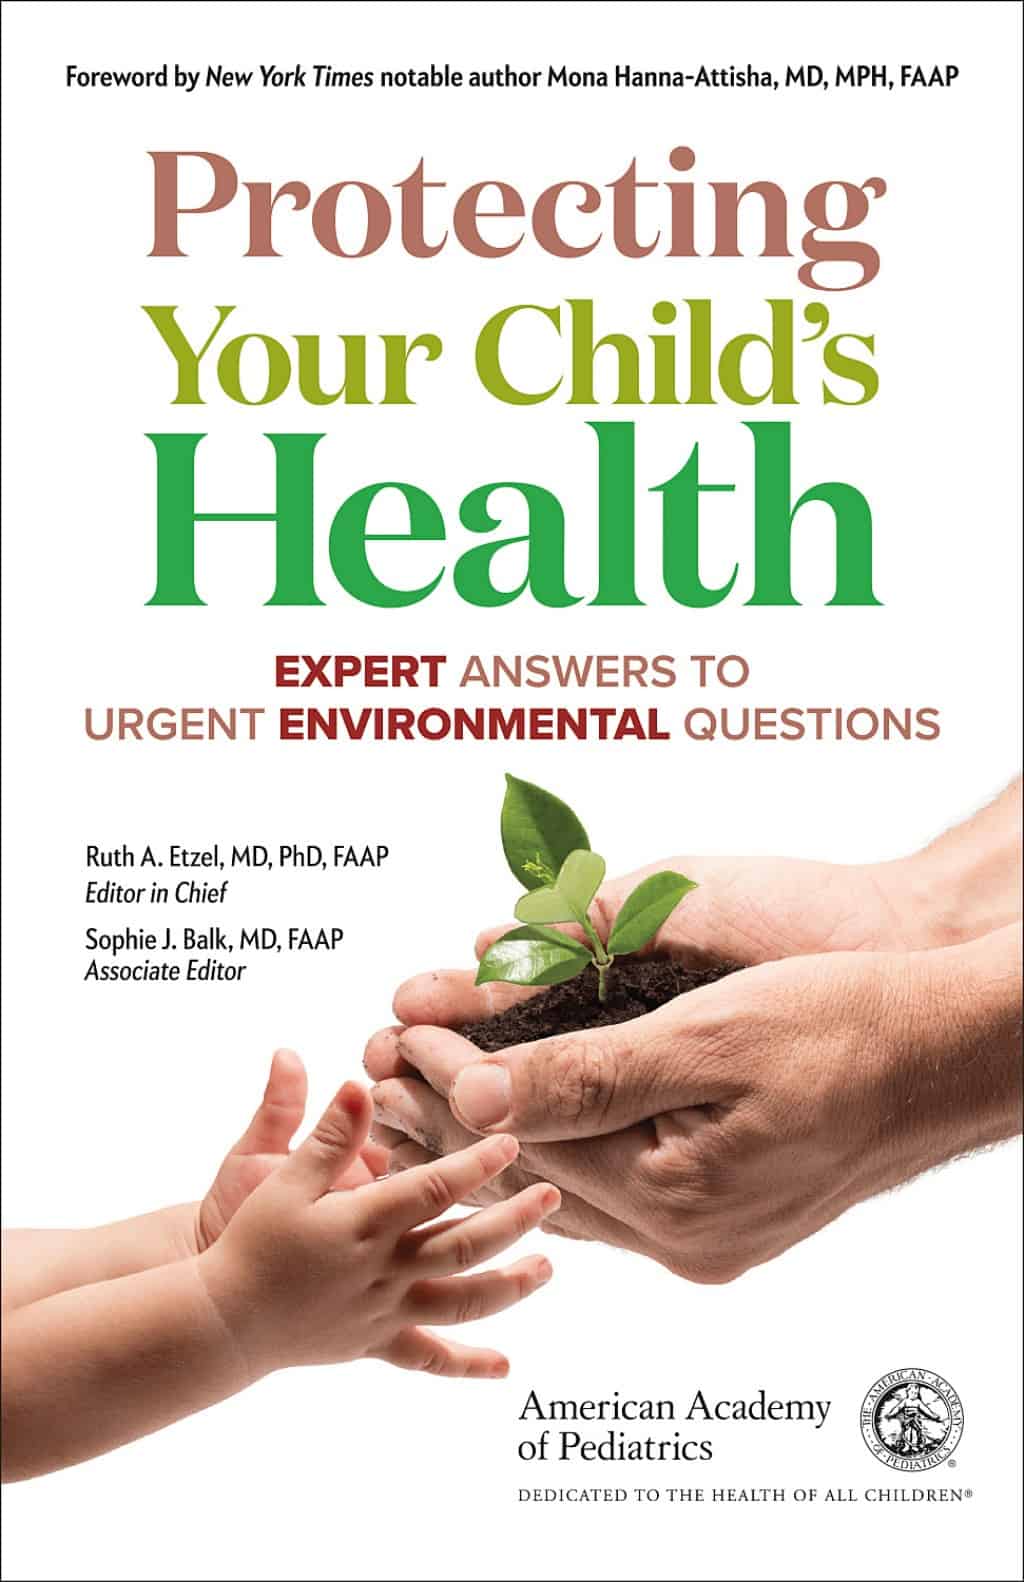 children's health